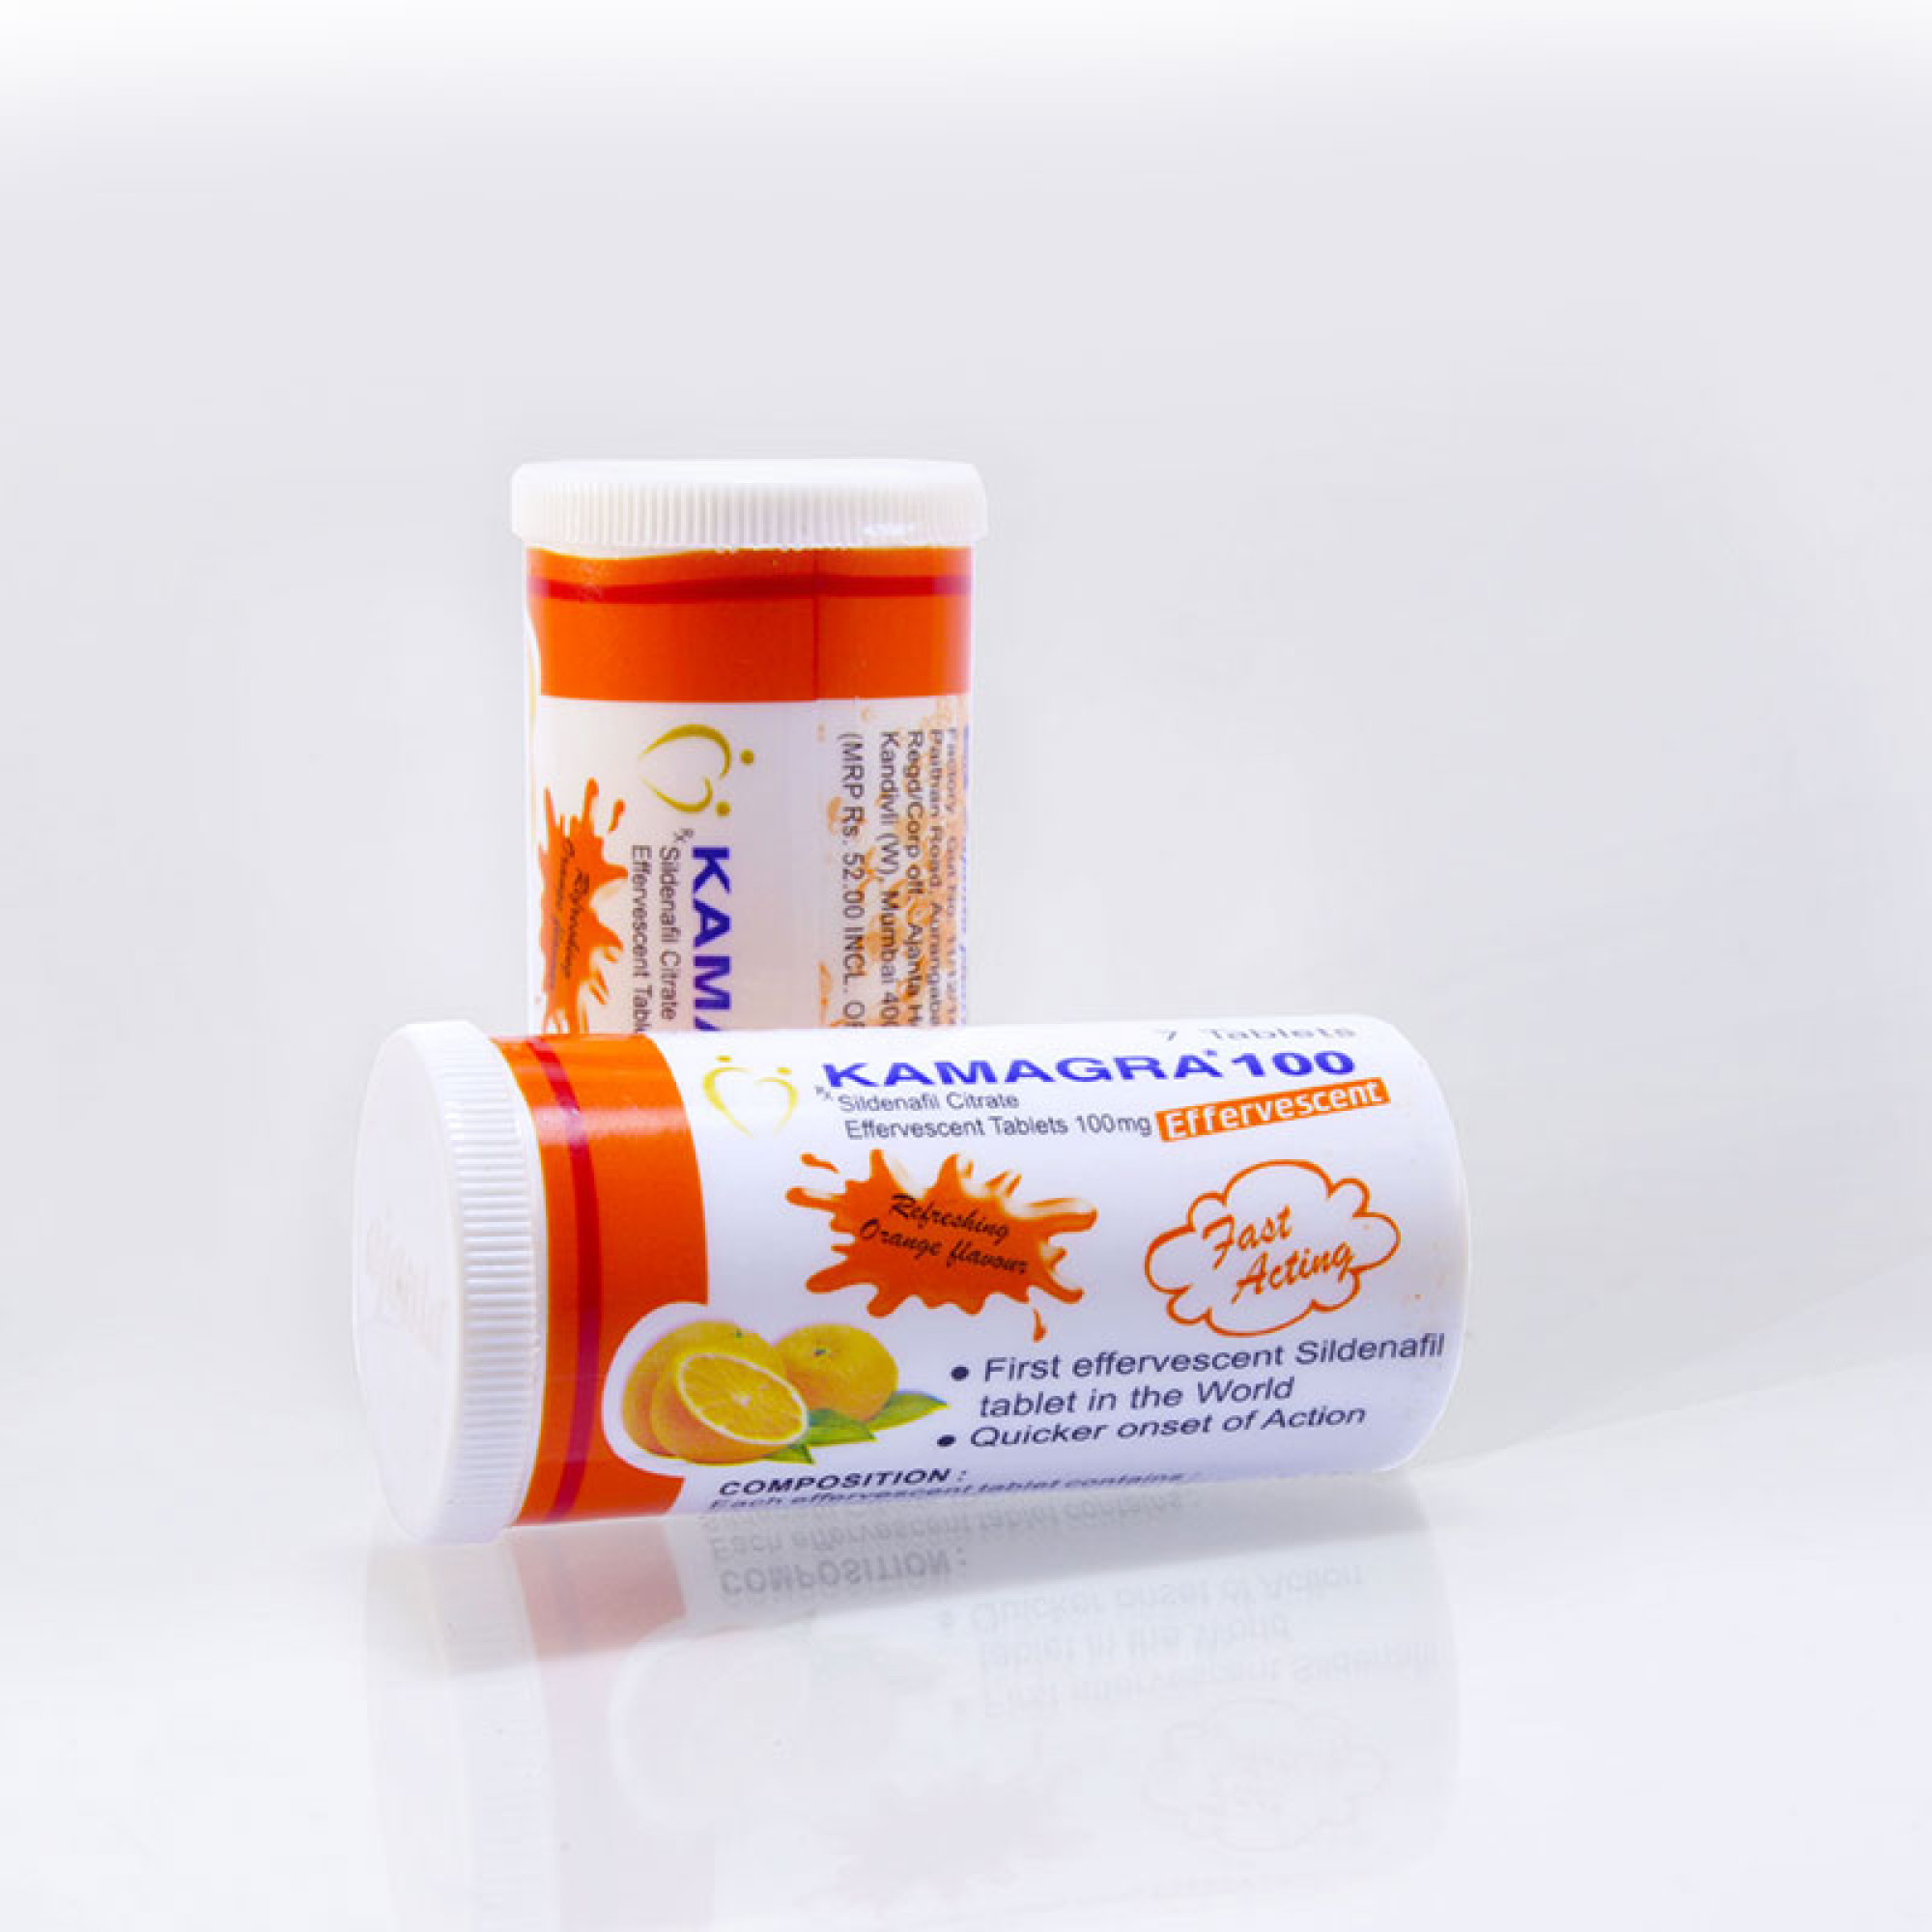 4x paquets Kamagra effervescent 100 mg (28 comprimés) - Exp. 12/2023 -1